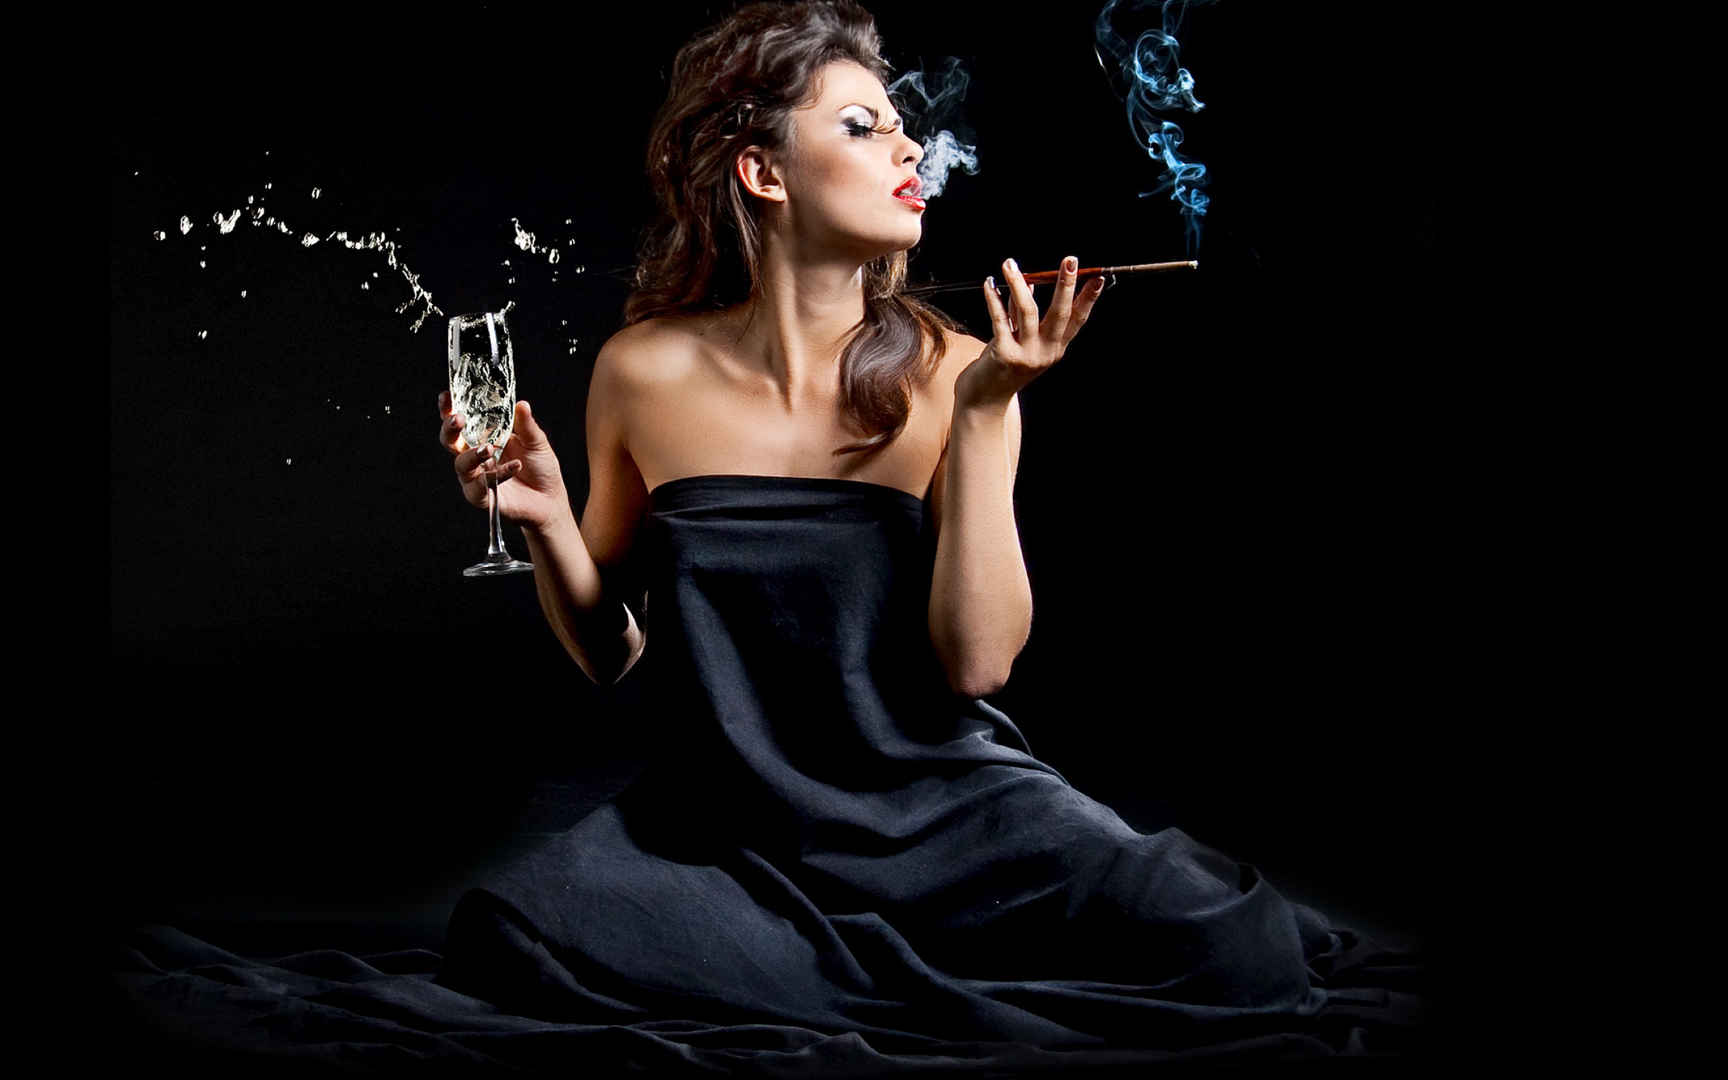 弄堂里的抽烟女人-中关村在线摄影论坛